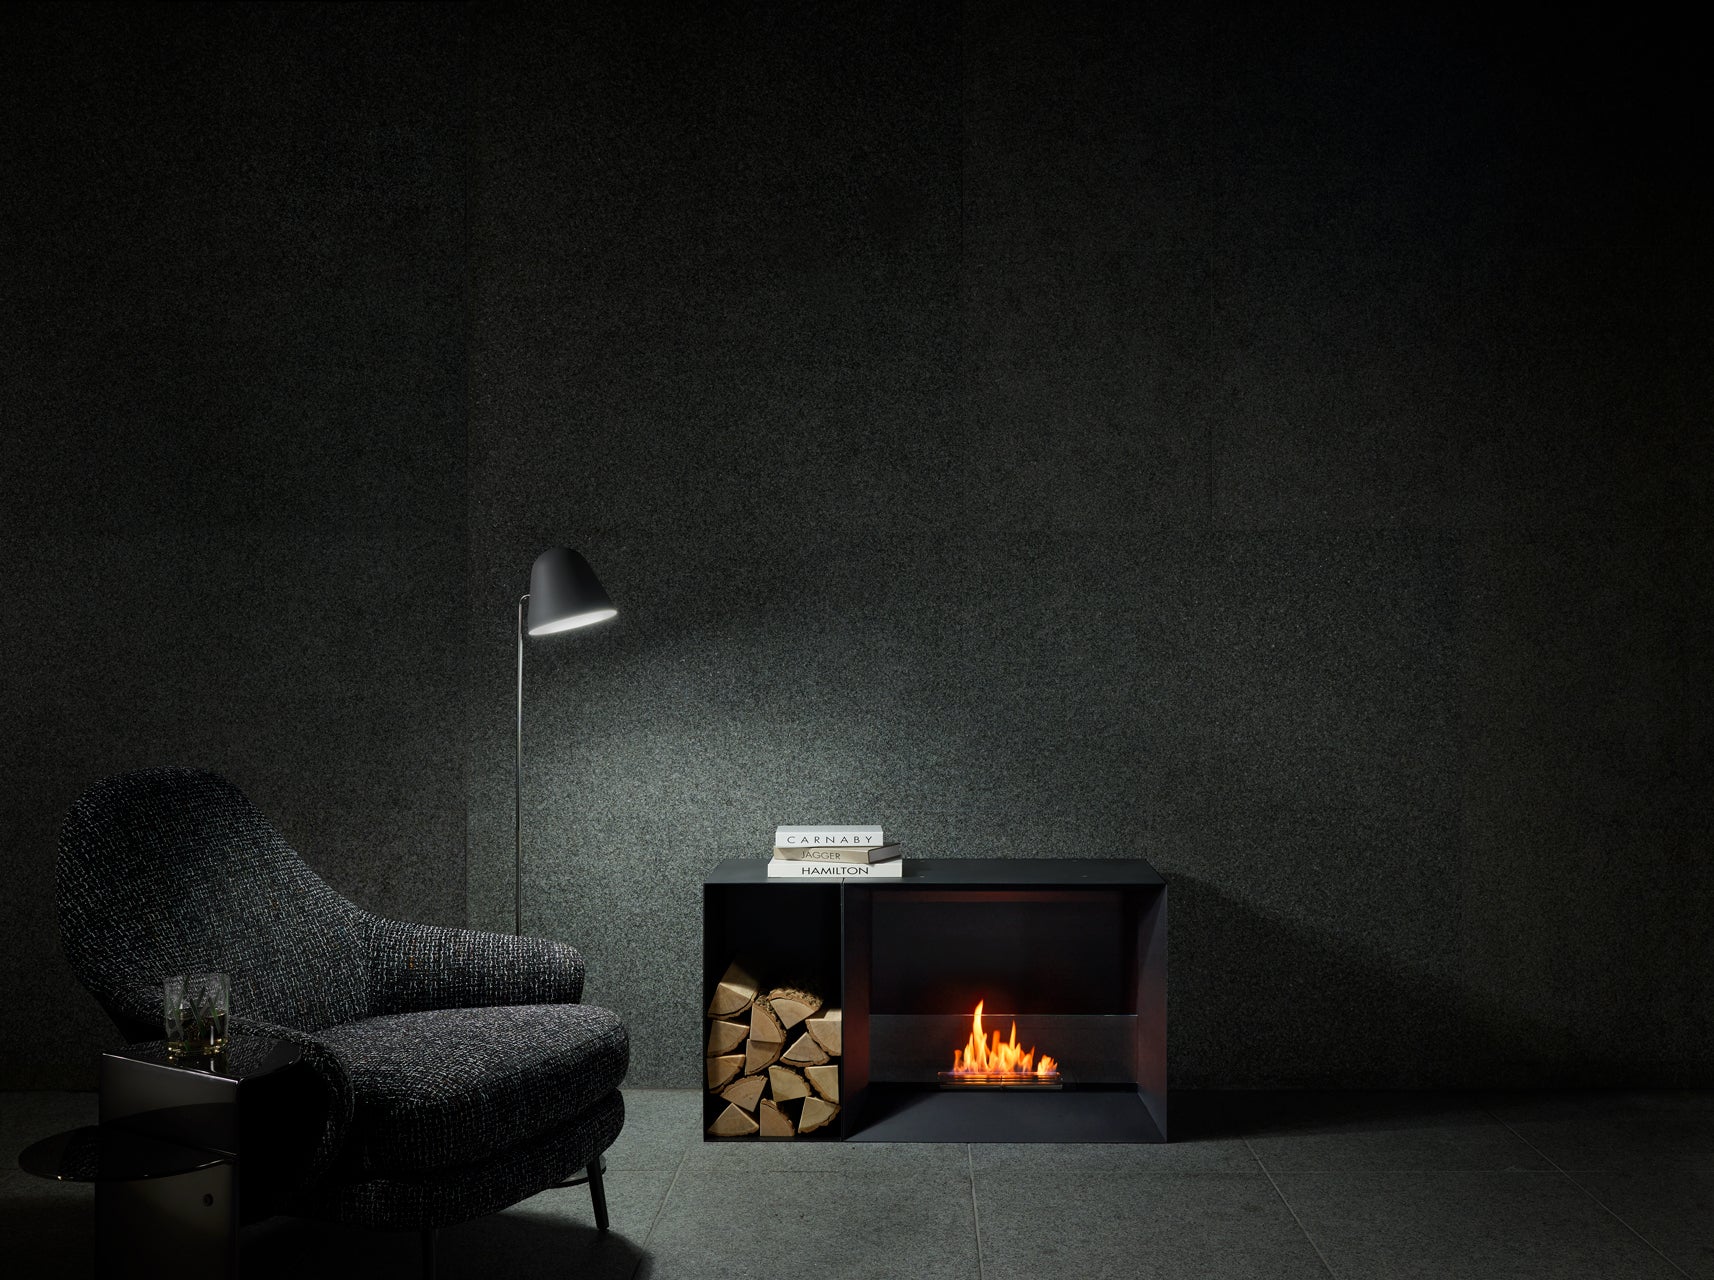 バイオエタノール暖炉「EcoSmart Fire」製品のFormの画像。暖炉と違って工事が不要なため、自由な場所に配置できています。